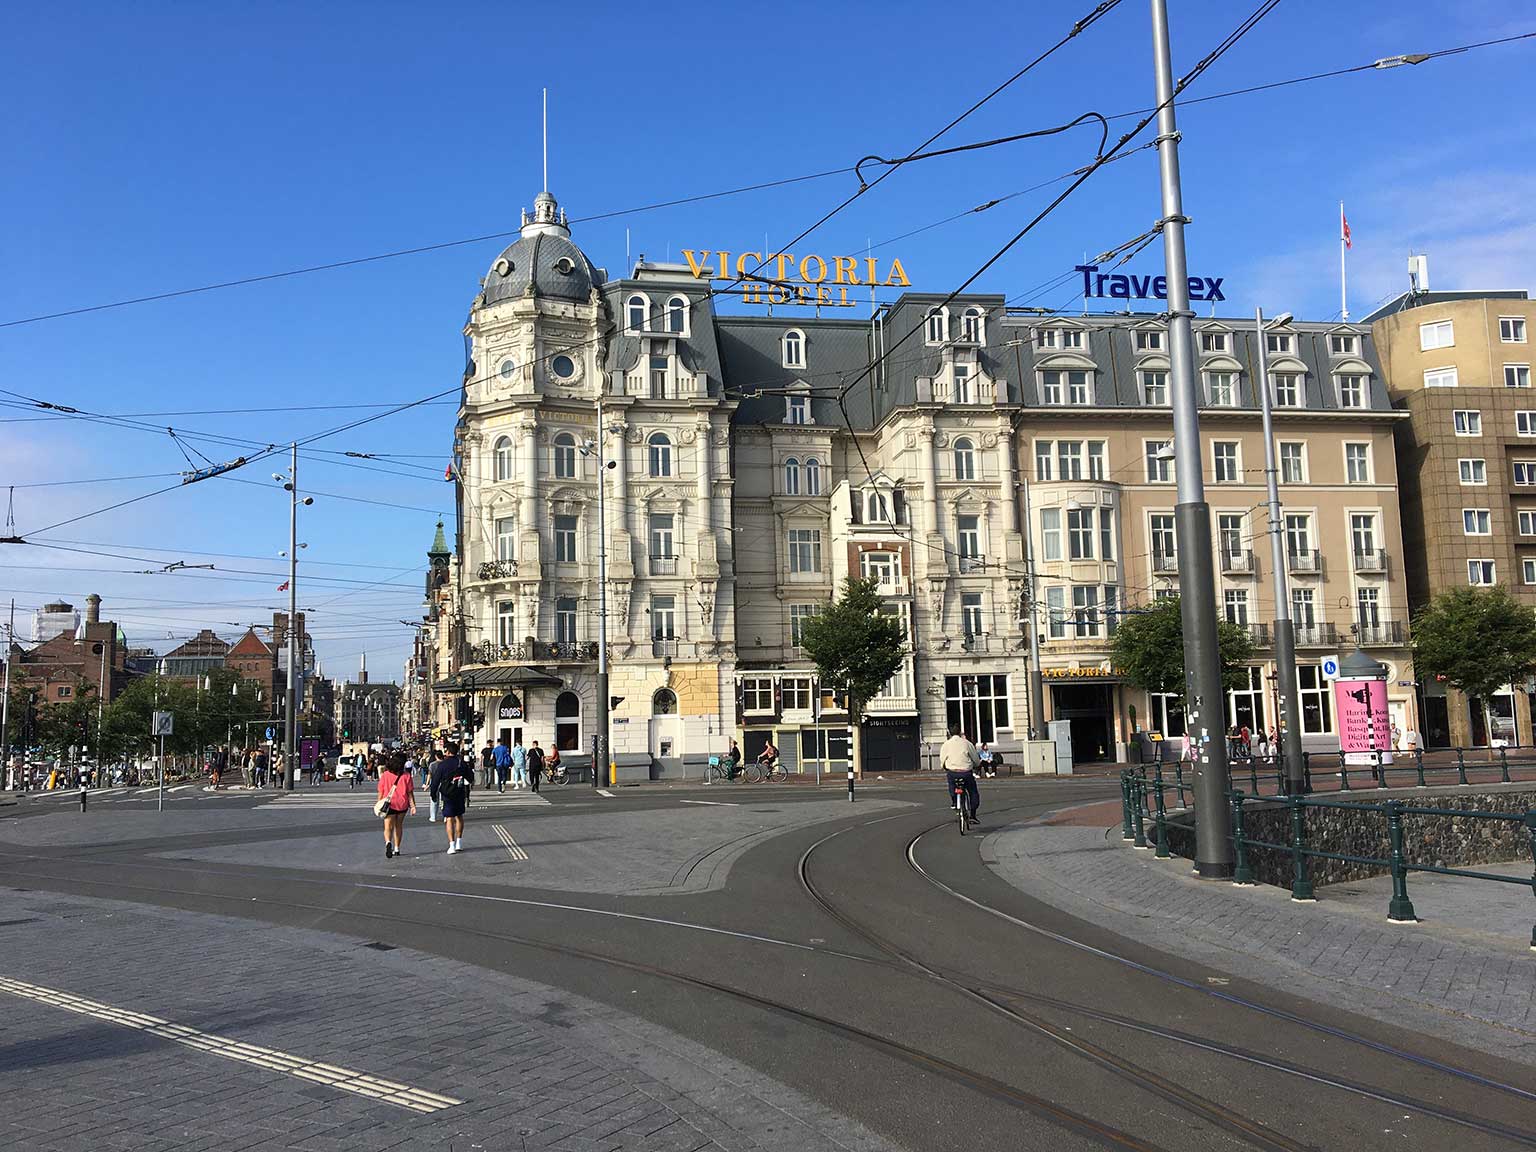 Damrak, Amsterdam, gezien vanaf het Stationsplein met het Victoria Hotel op de hoek